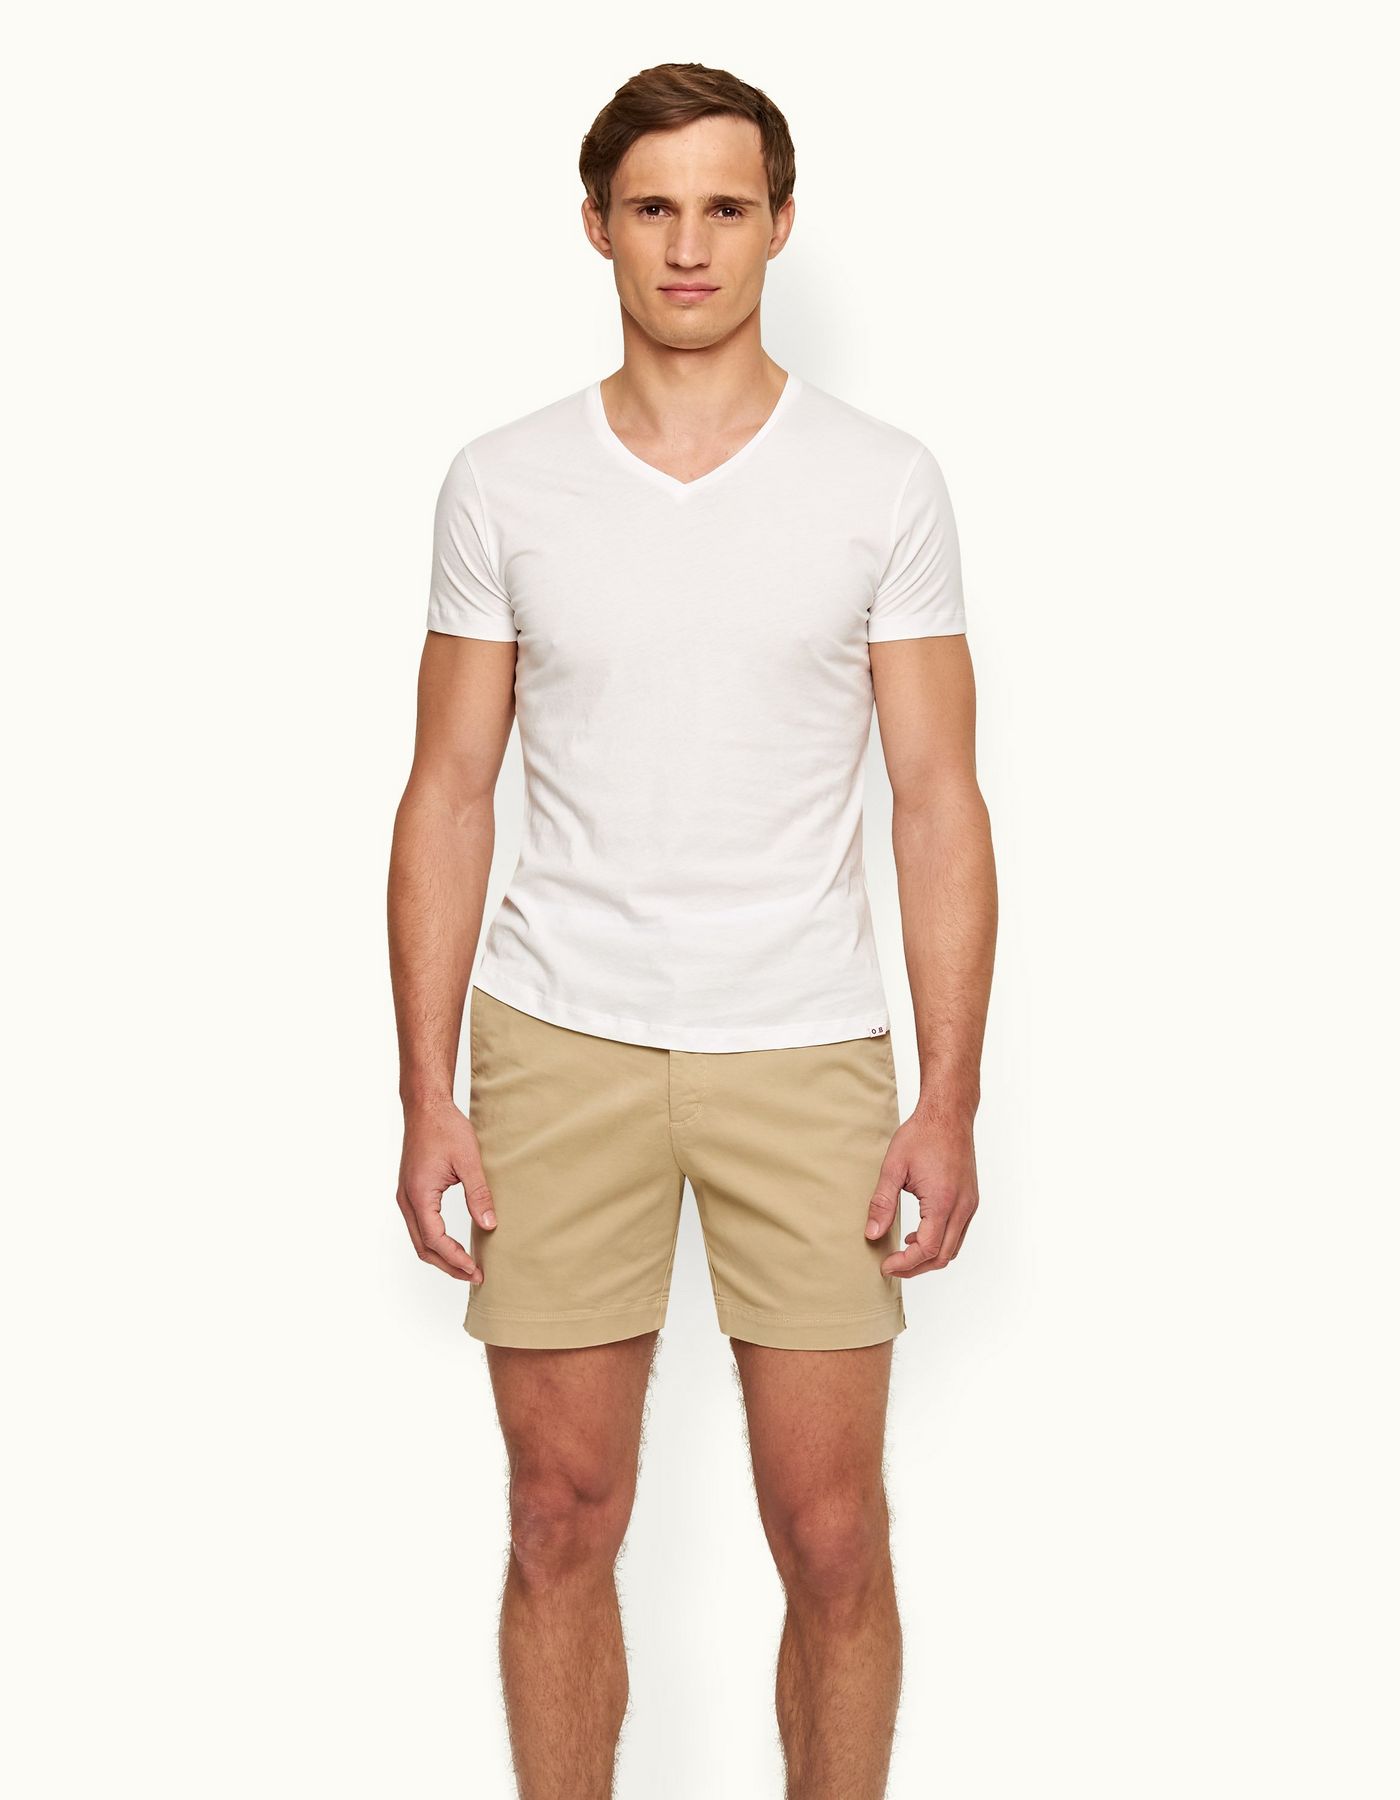 OB-V - White Tailored Fit V-neck T-Shirt | Orlebar Brown